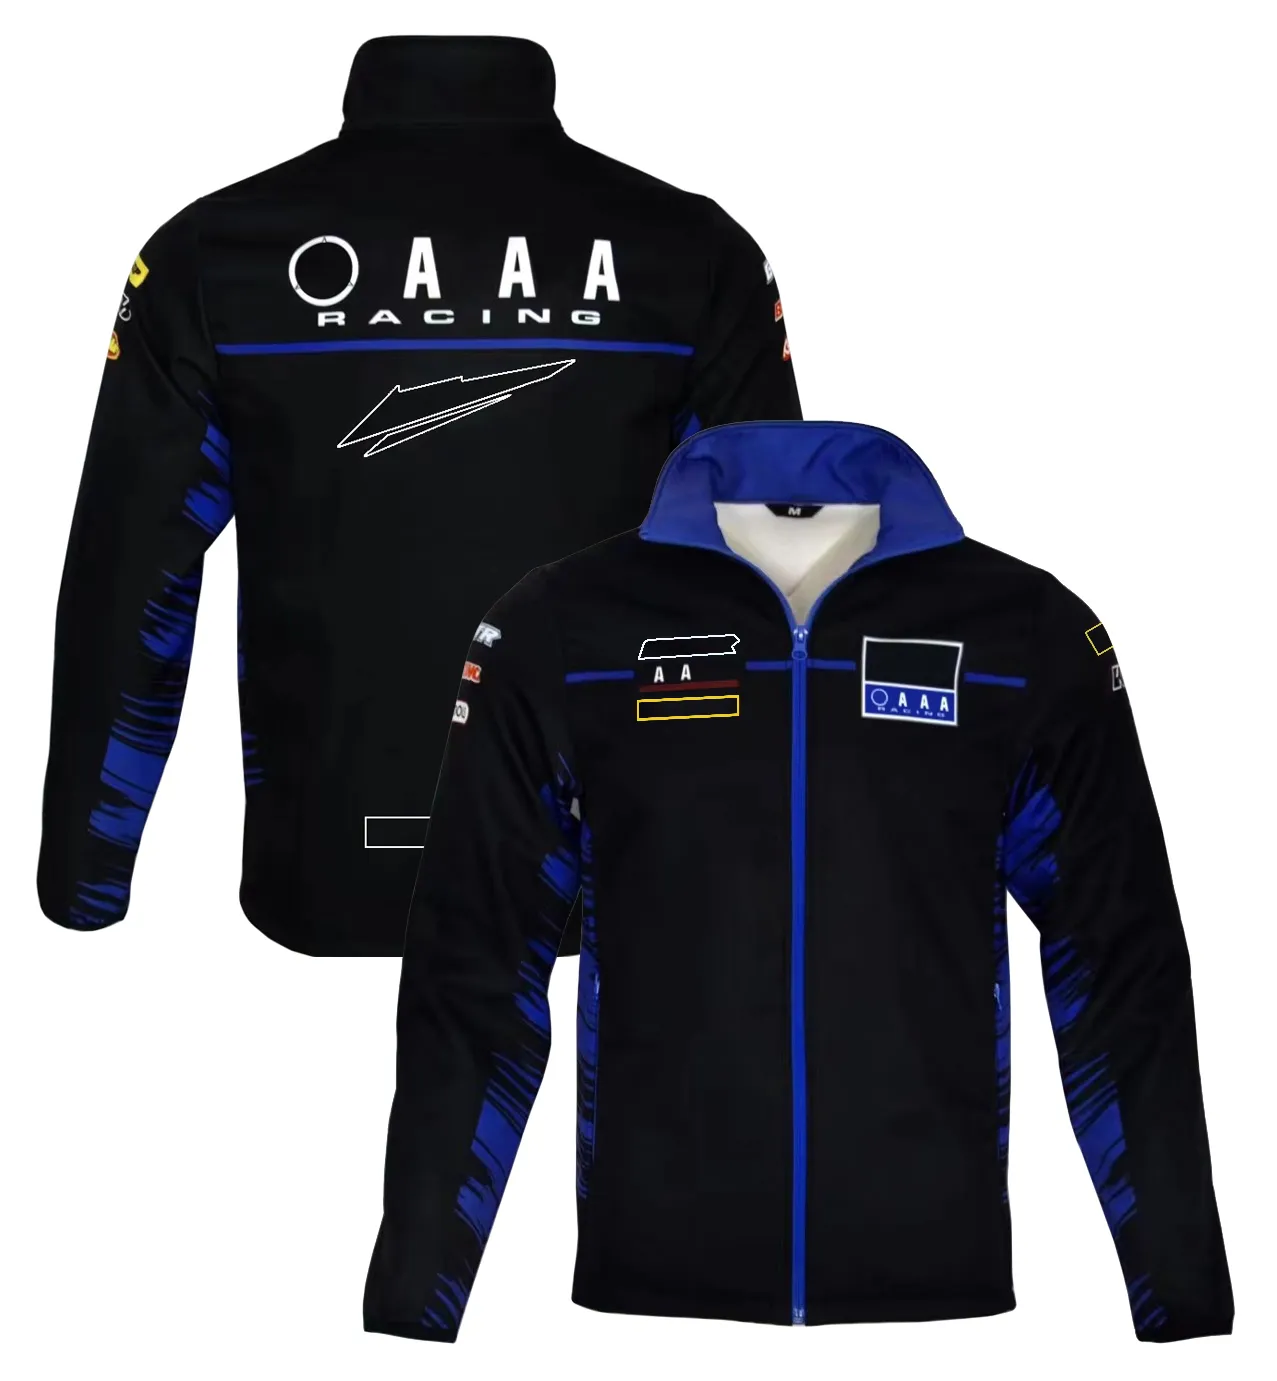 Le nouveau produit F1 Formula One Racing Suit Jacket Sports Hoodie et Soft Shell Jacket sont personnalisés dans le même style.